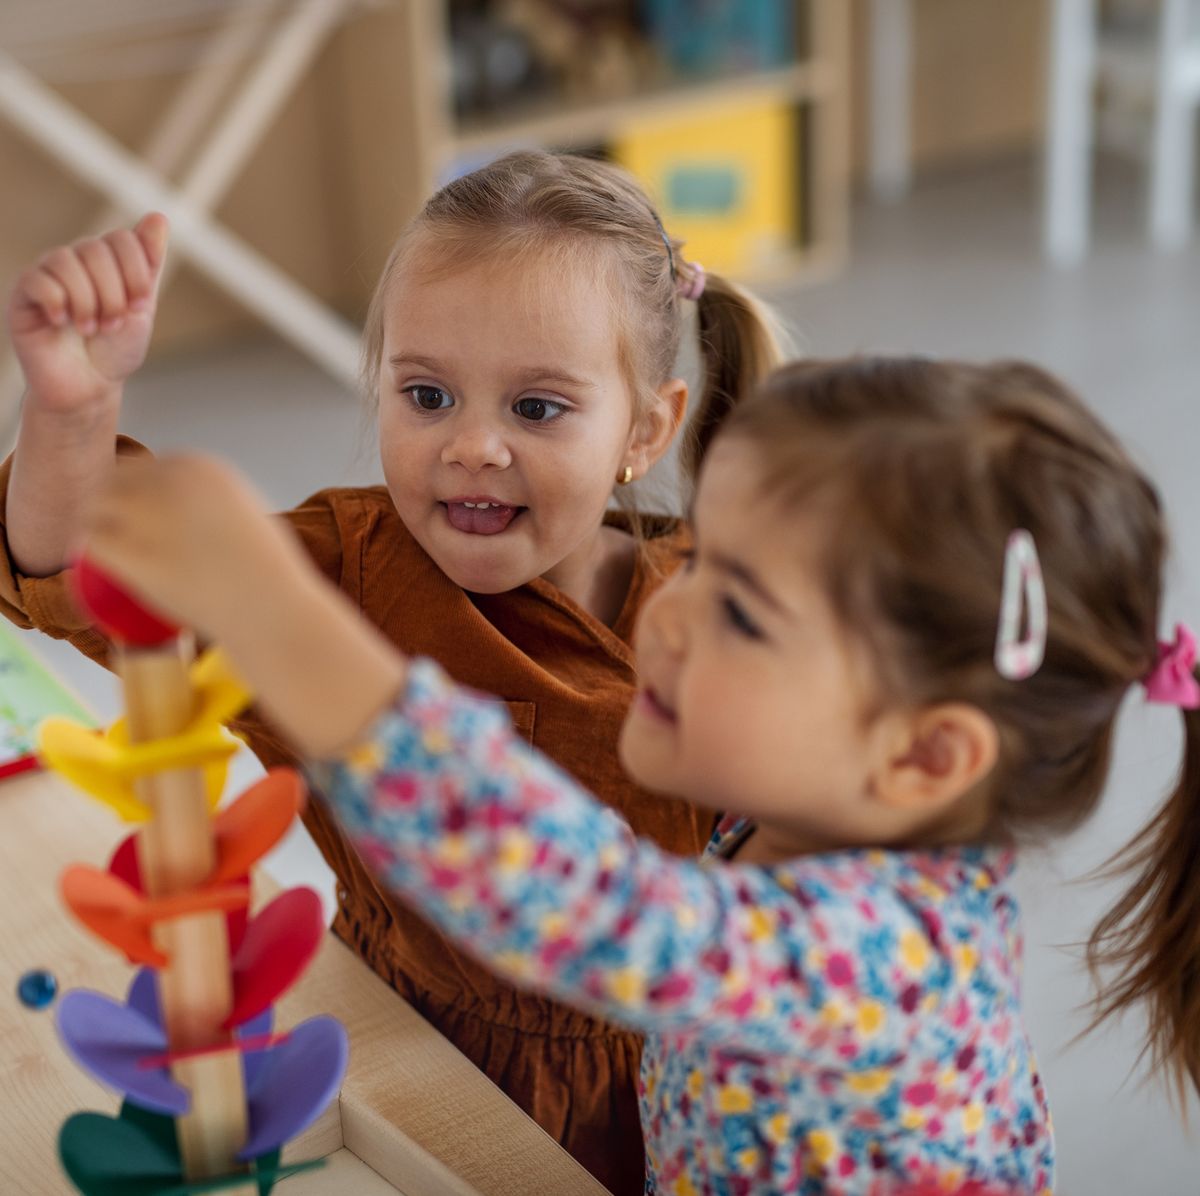 Método Montessori: qué es y beneficios para los niños